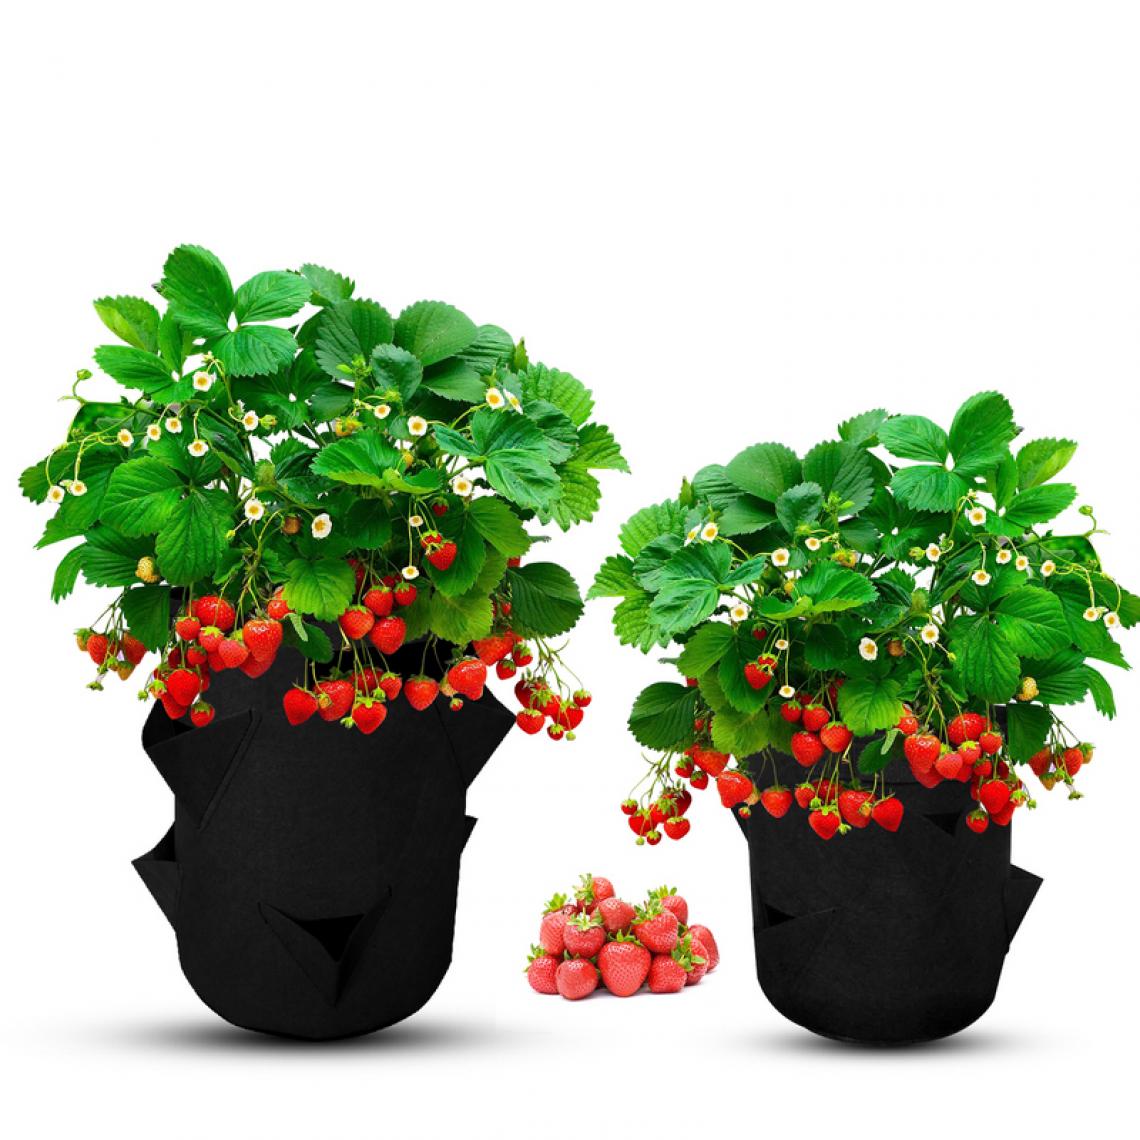 Einfeben - 2x Sac pour plantes Sac pour plantes 10 gallons Sac pour plantes Panier pour plantes Pomme de terre Tomate Fraise - Pots, cache-pots